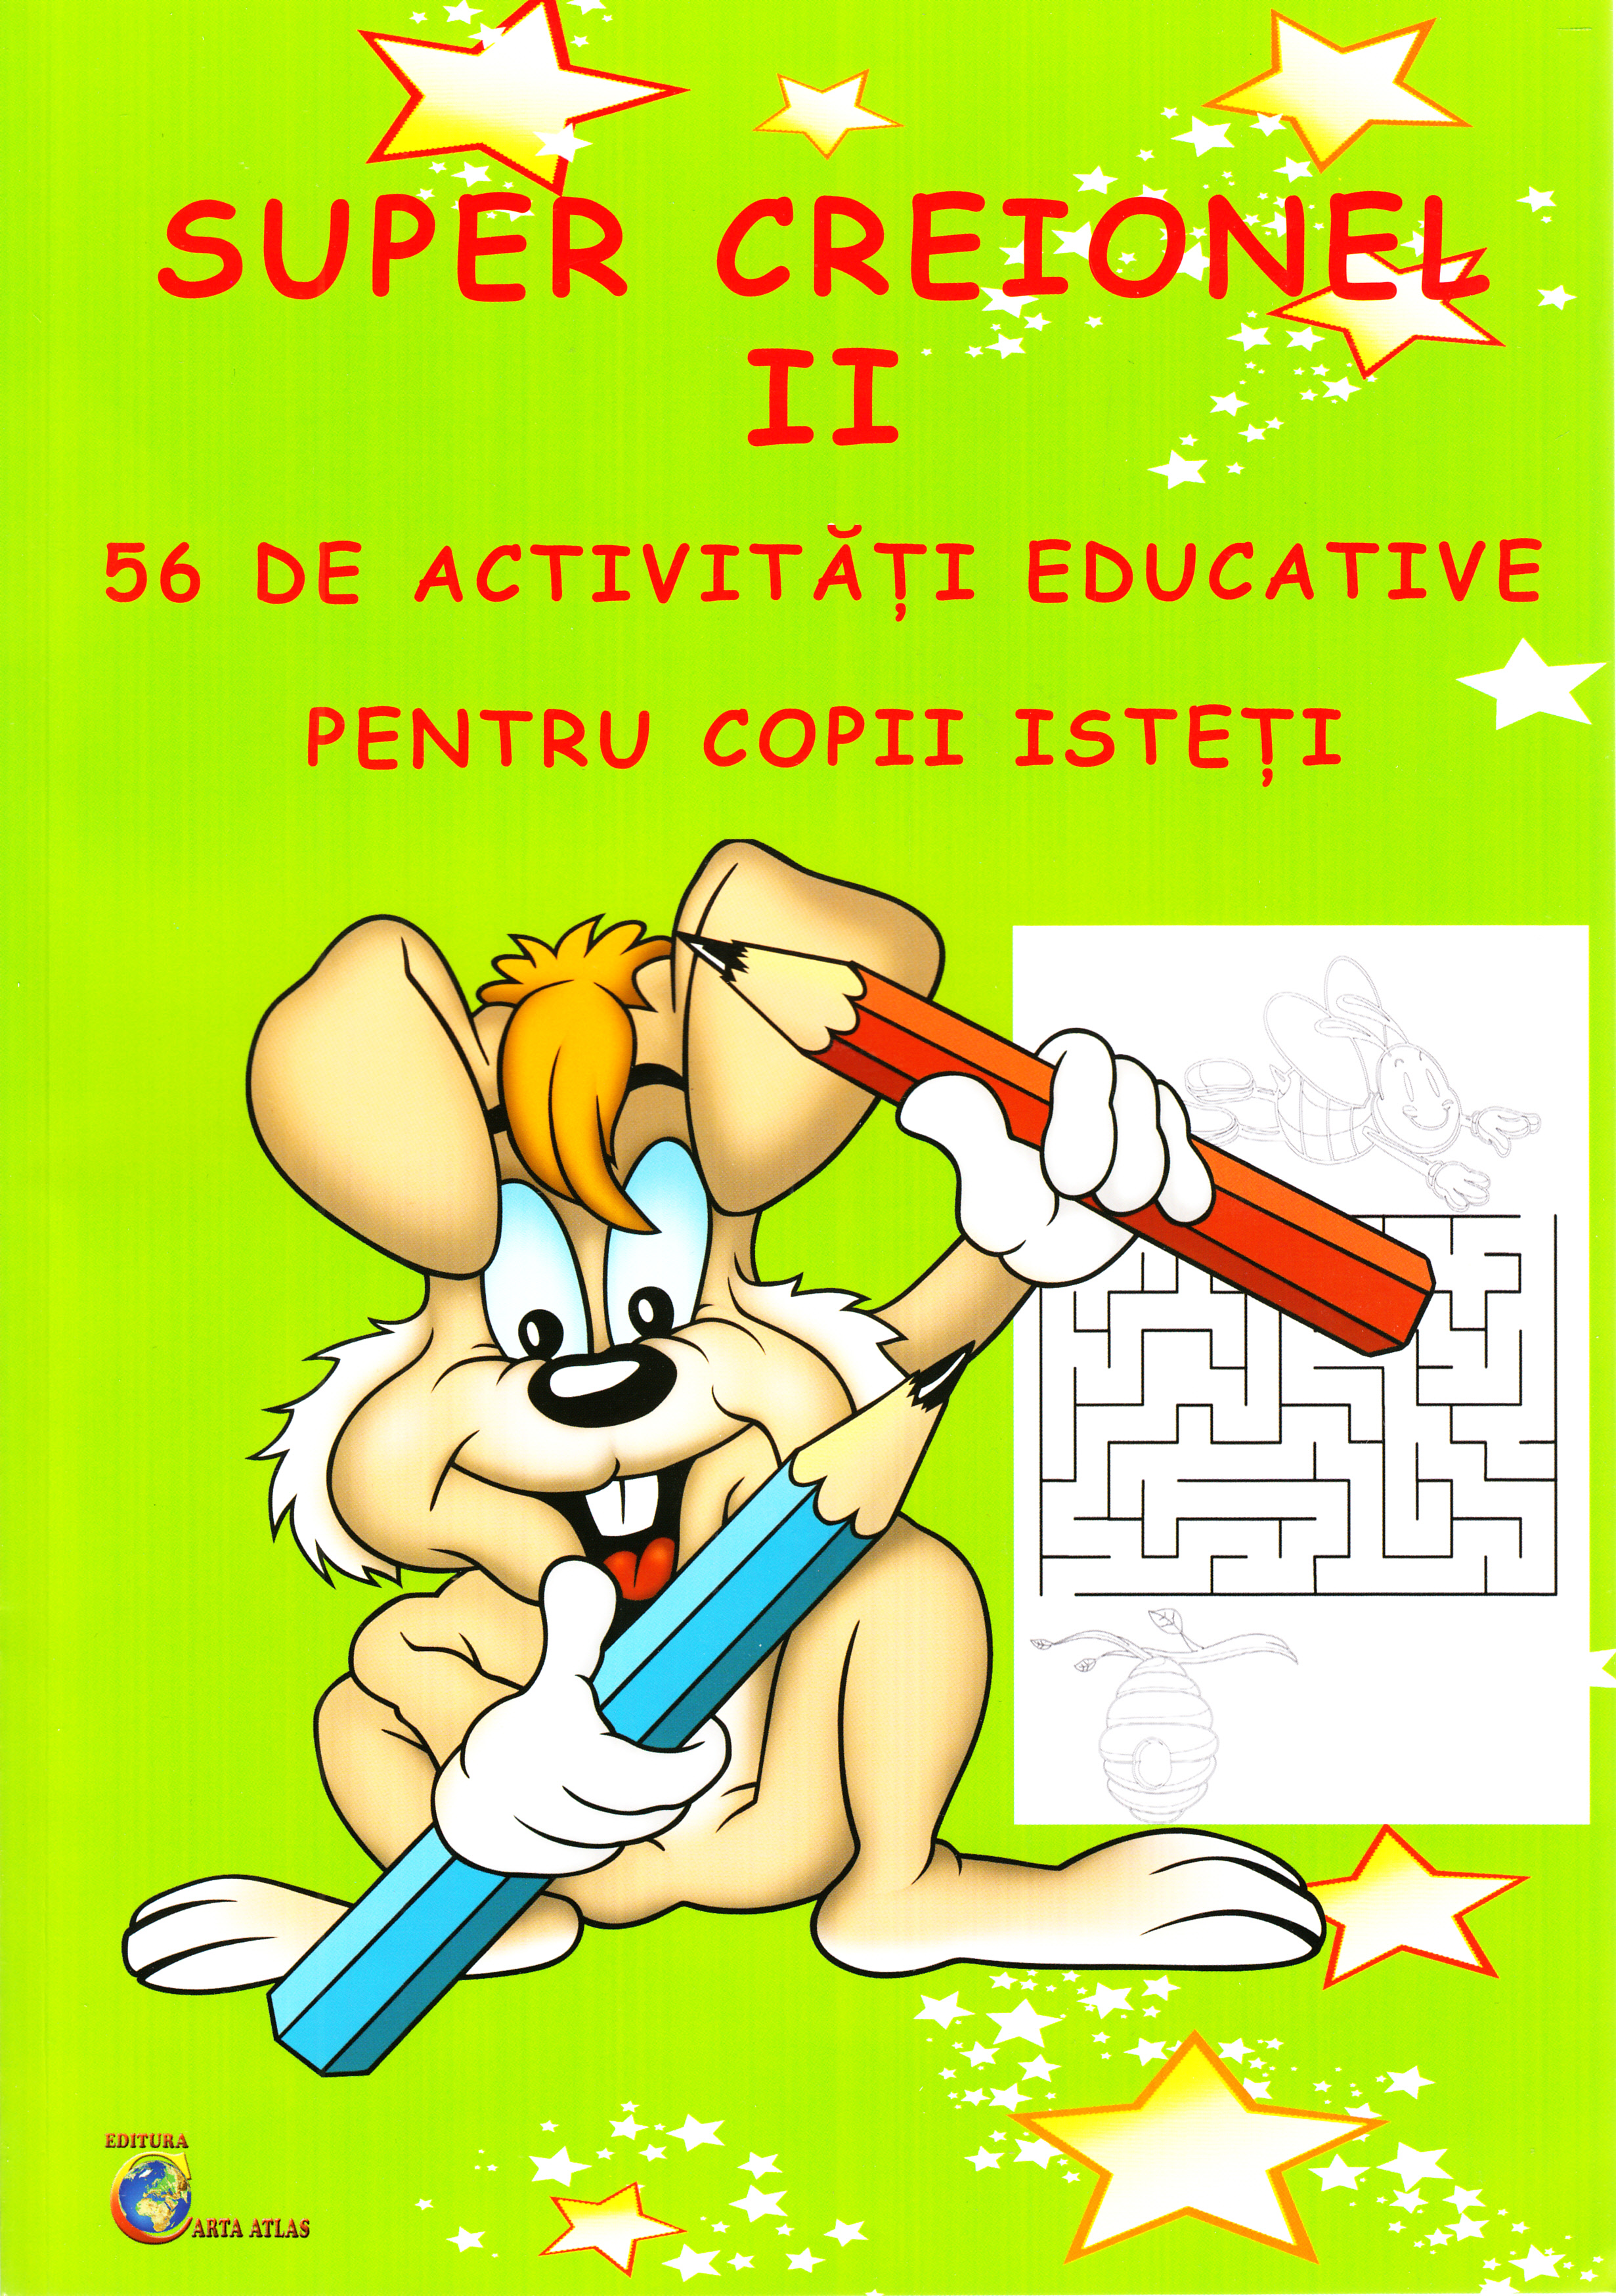 Super creionul II. 56 de activitati educative pentru copii isteti